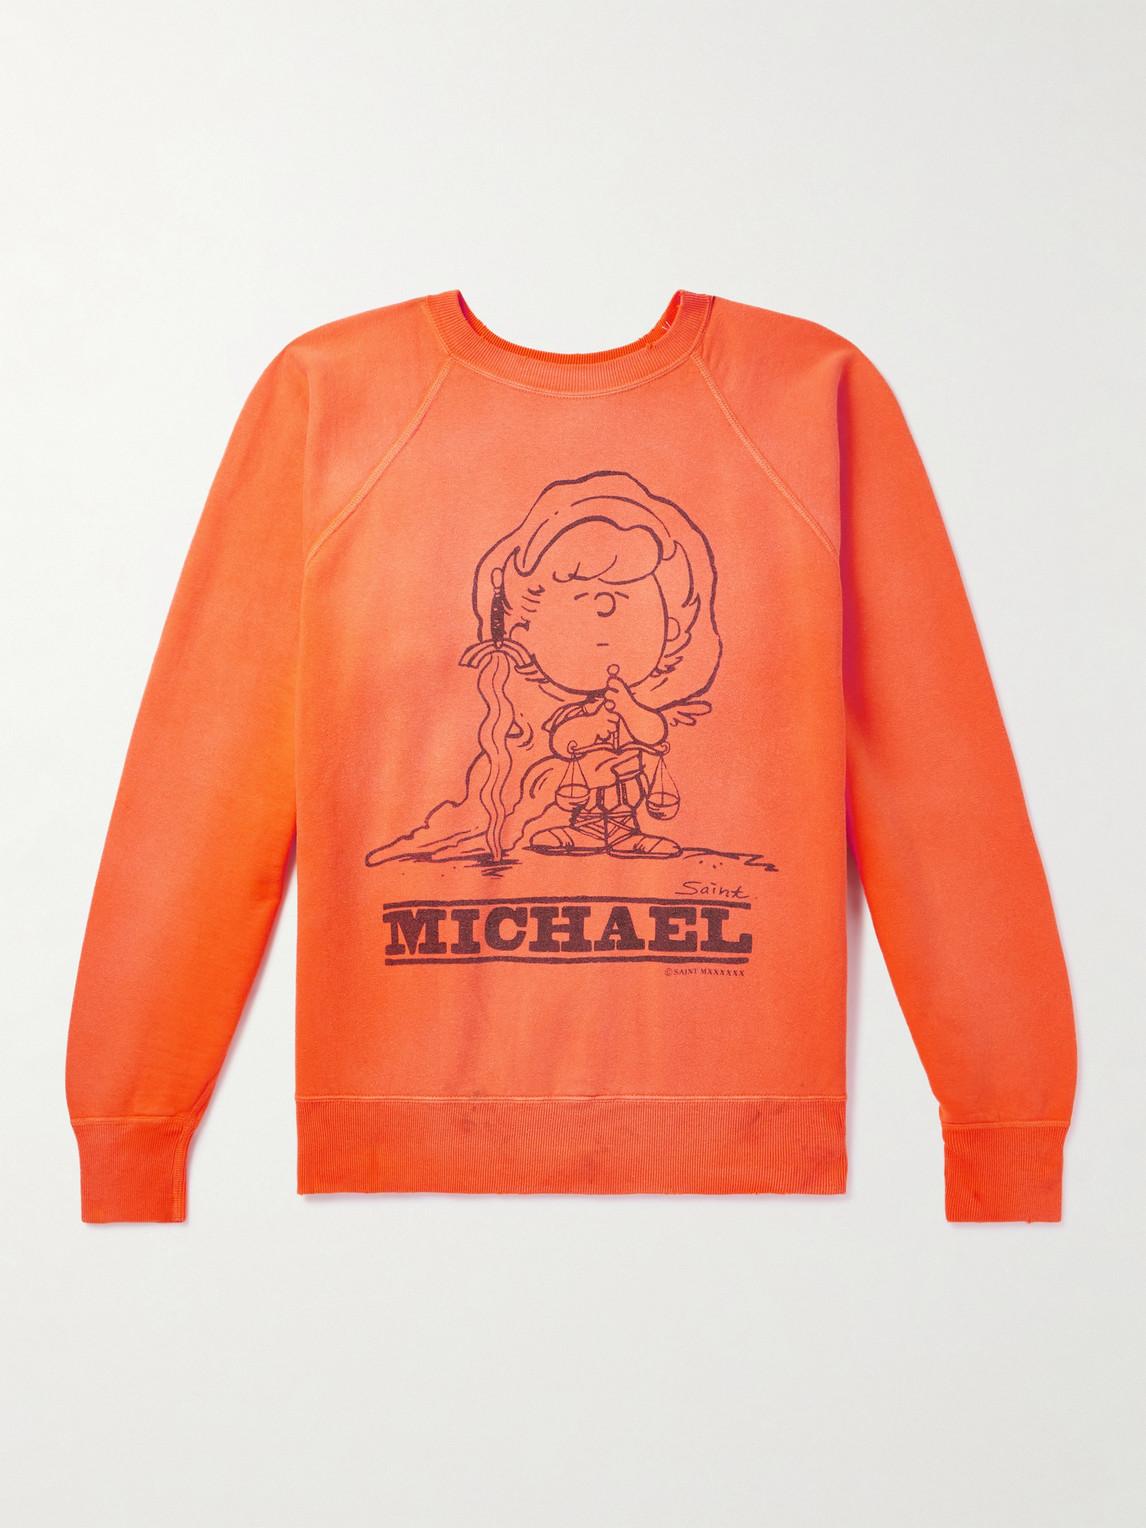 SAINT Mxxxxxx Michael Distressed Printed Cotton-jersey Sweatshirt